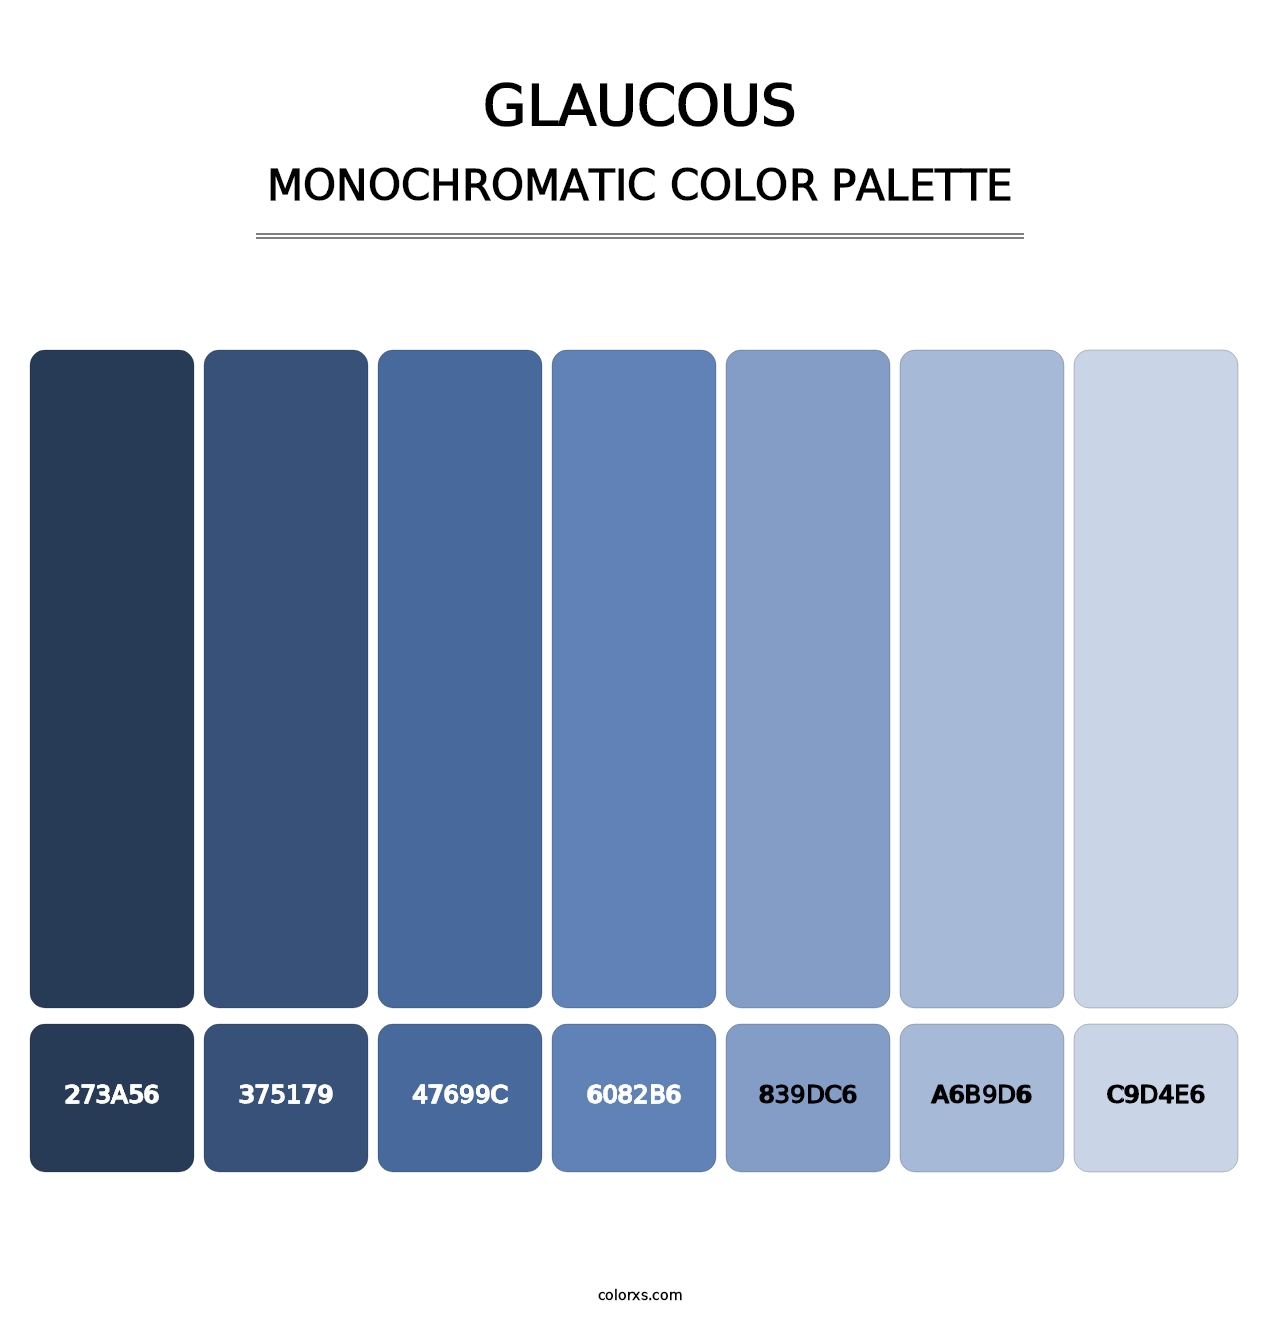 Glaucous - Monochromatic Color Palette